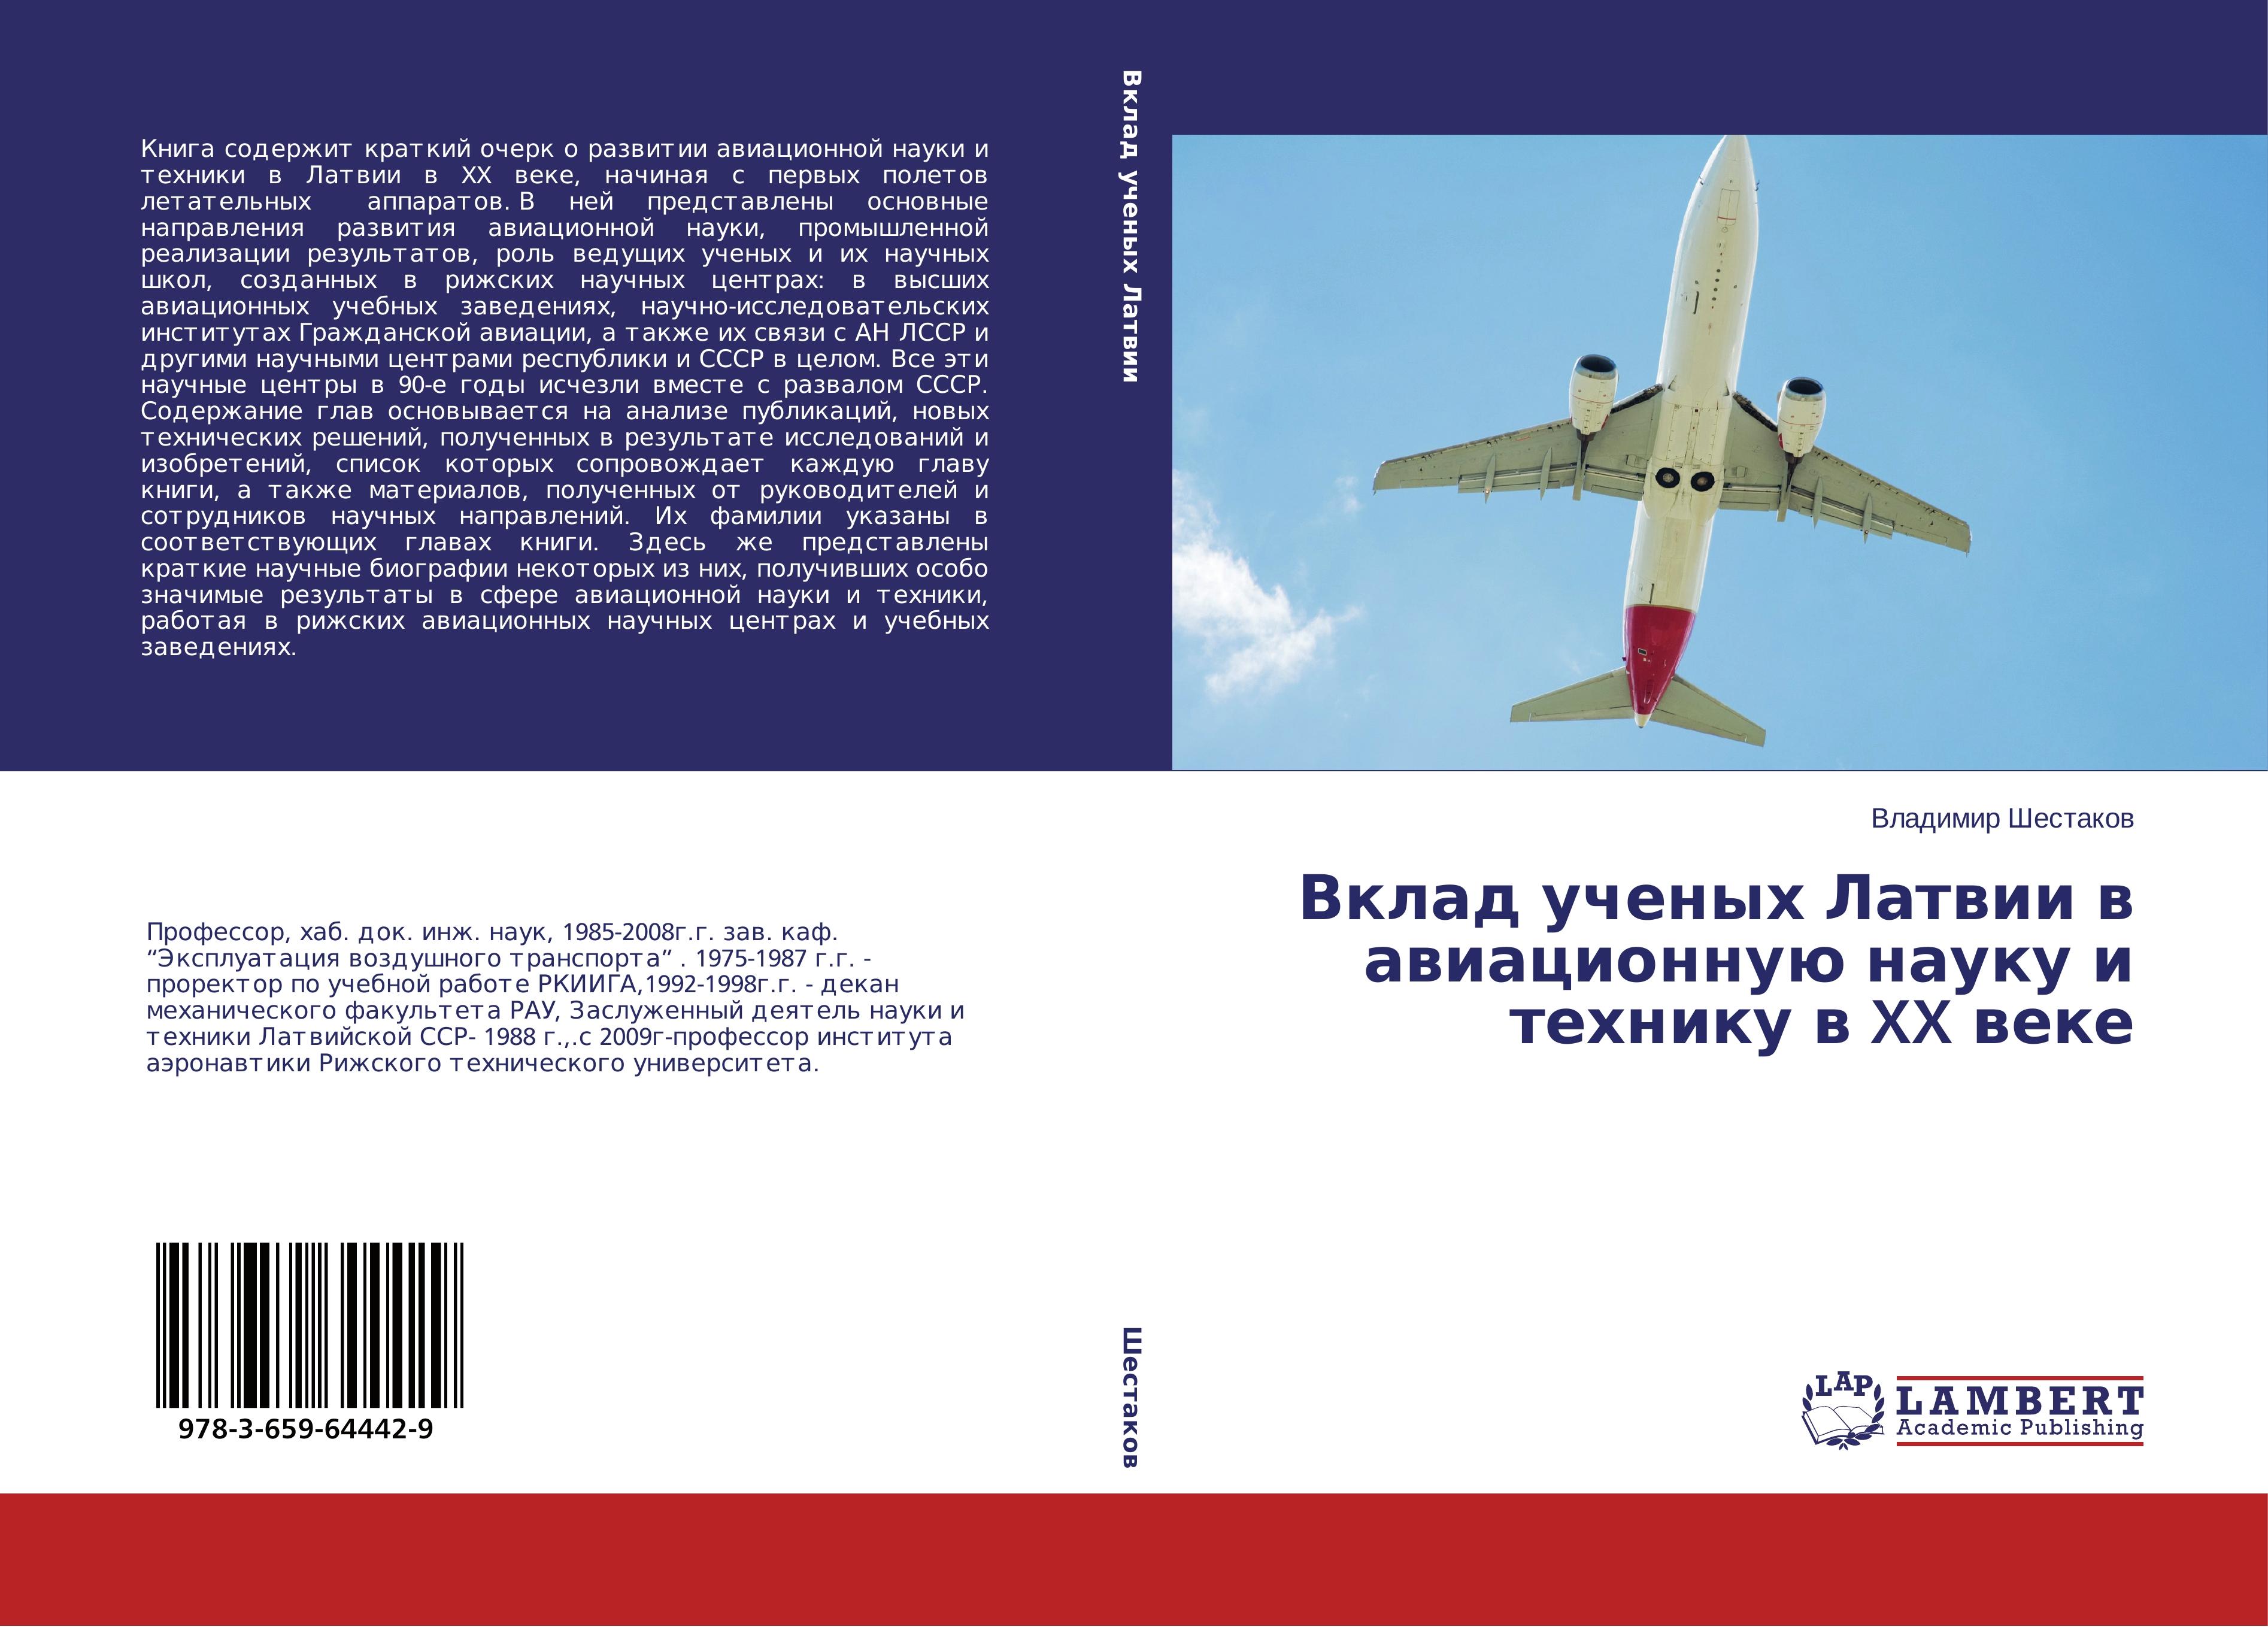 Vklad uchenyh Latvii v aviacionnuju nauku i tehniku v XX veke - Shestakov, Vladimir